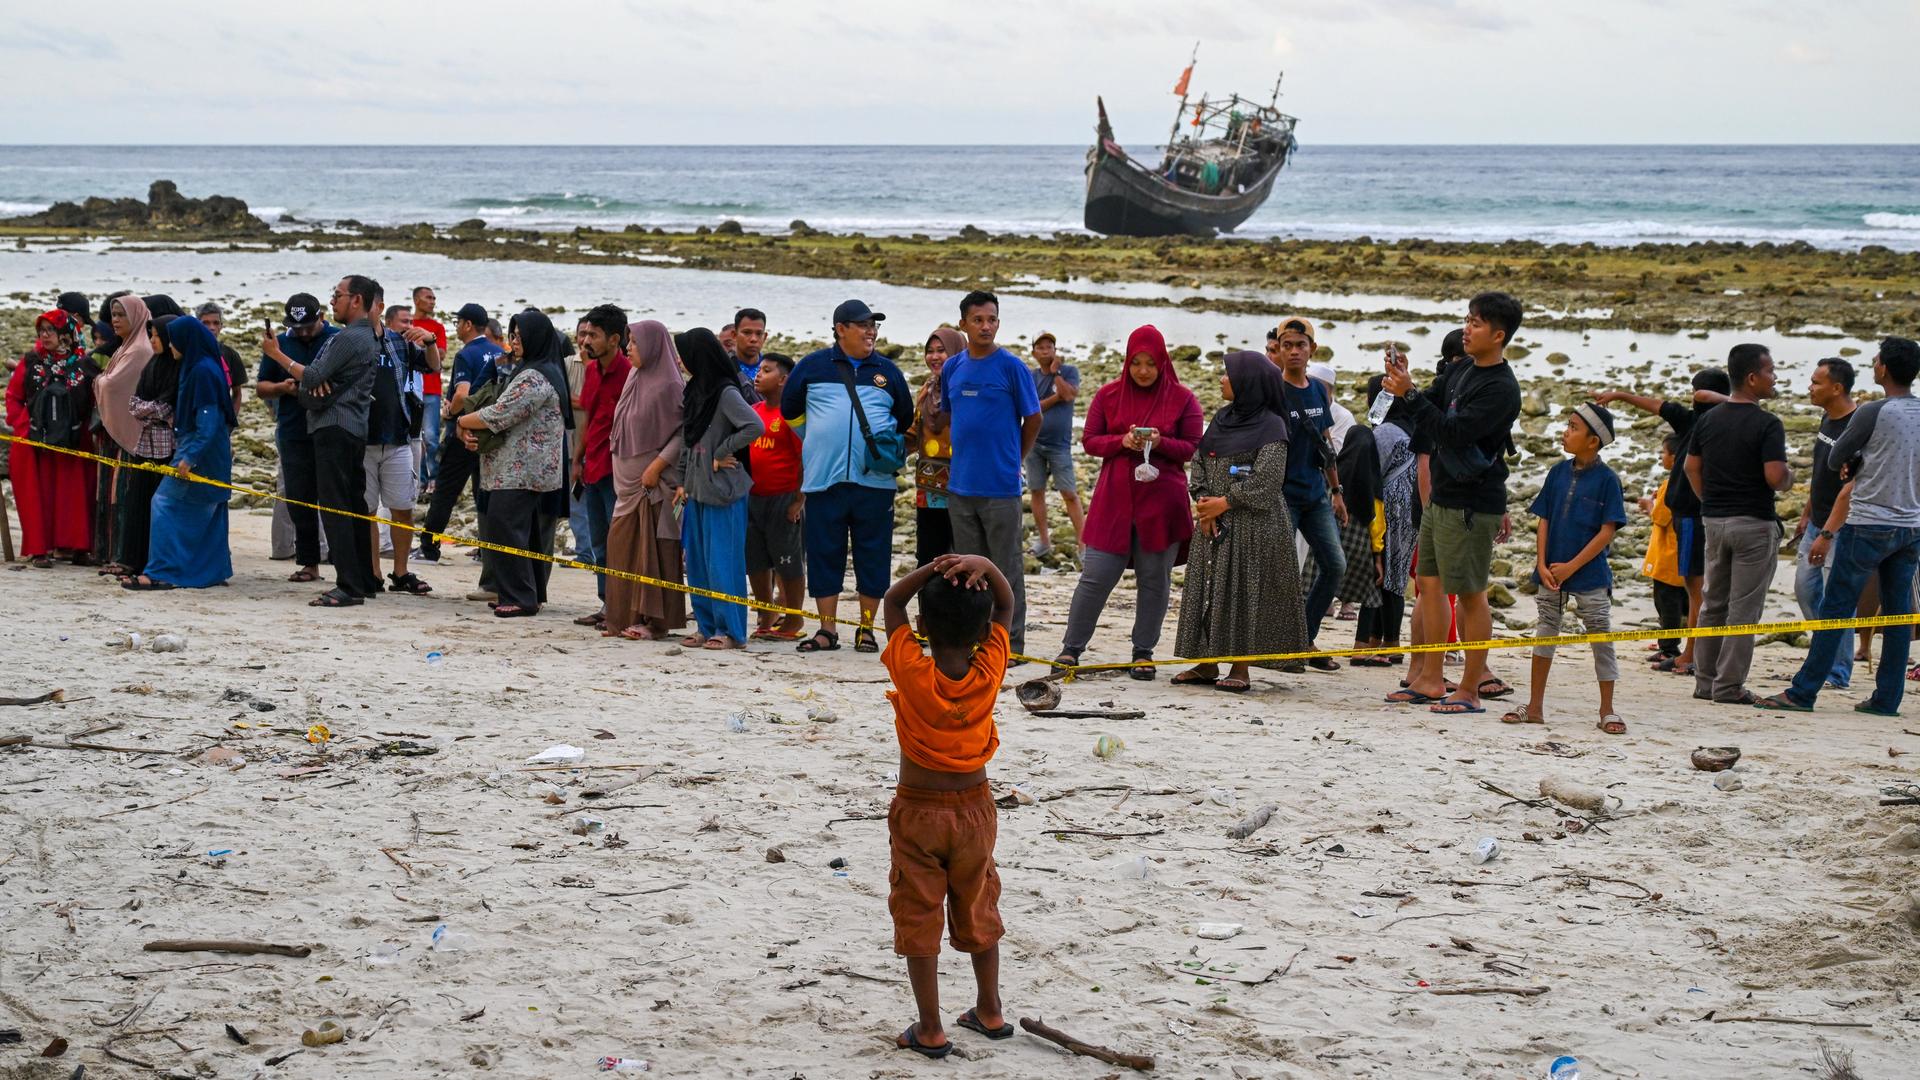 Rohingya-Flüchtlinge auf der Insel Sabang in der indonesischen Provinz Aceh. Sie stehen hinter einem Absperrband am Strand. Im Hintergrund ist ein Boot zu sehen.